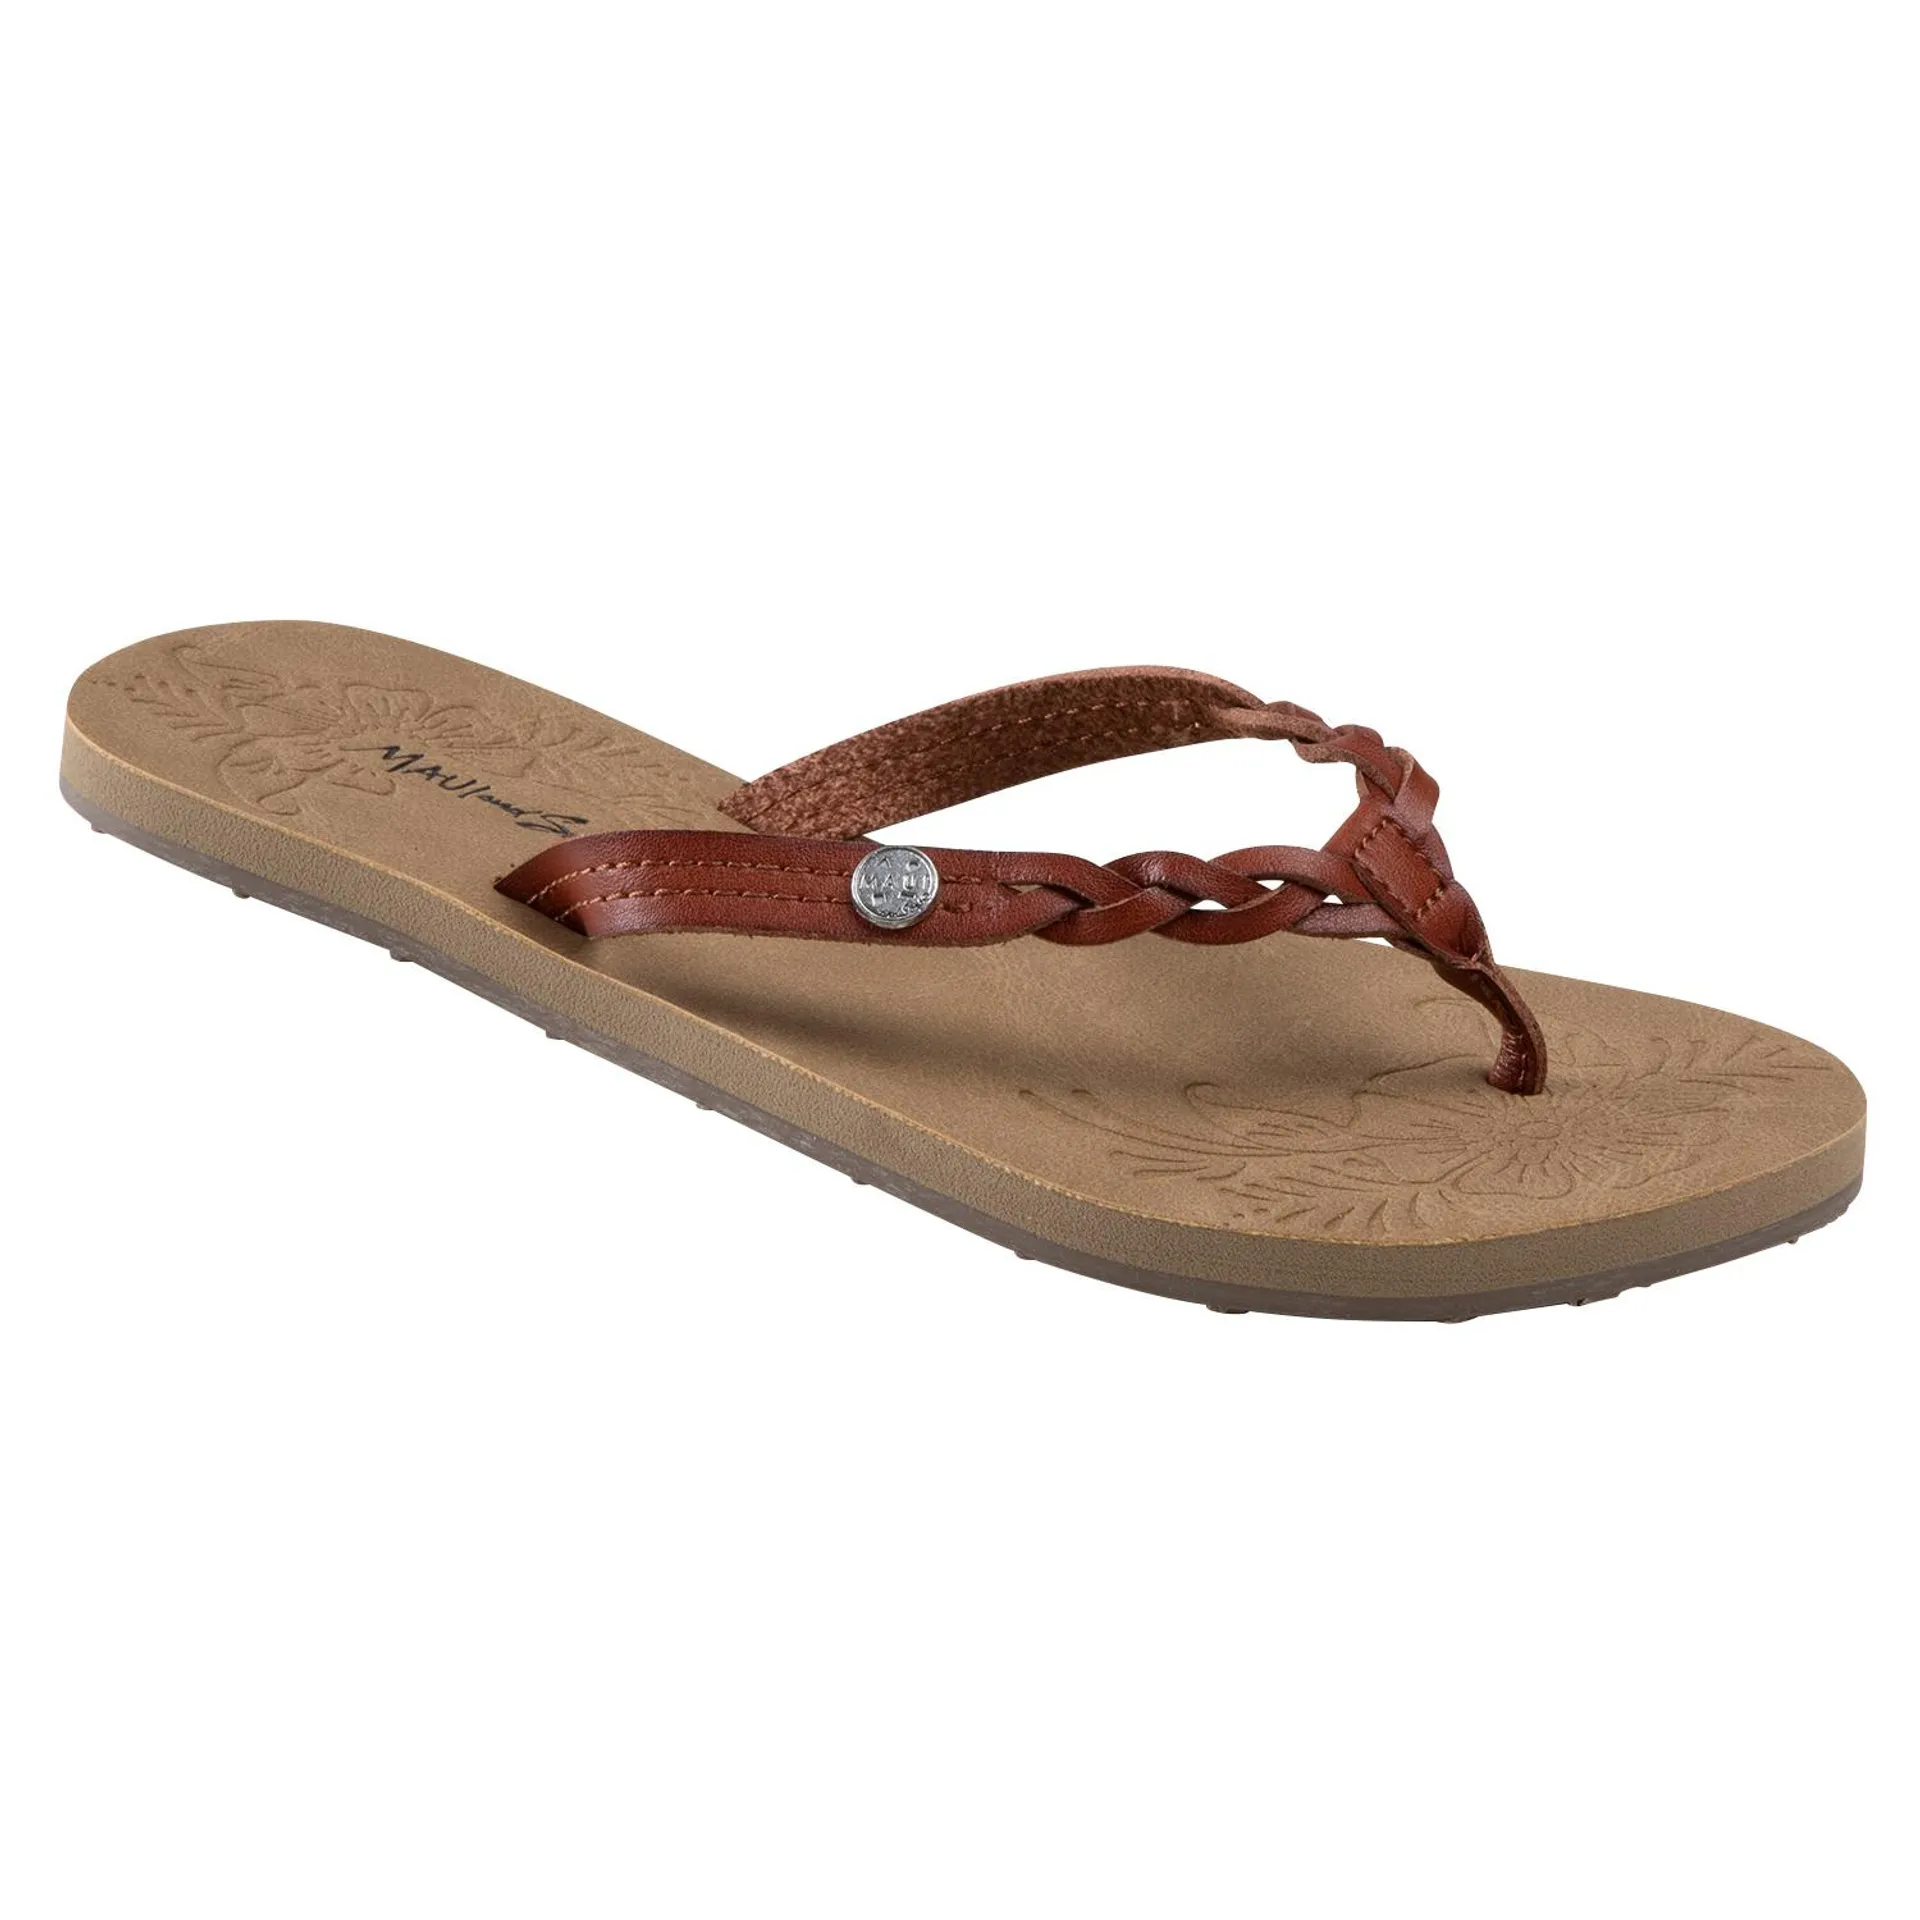 Maui & Sons Kaley Women's Flip Flop Sandals